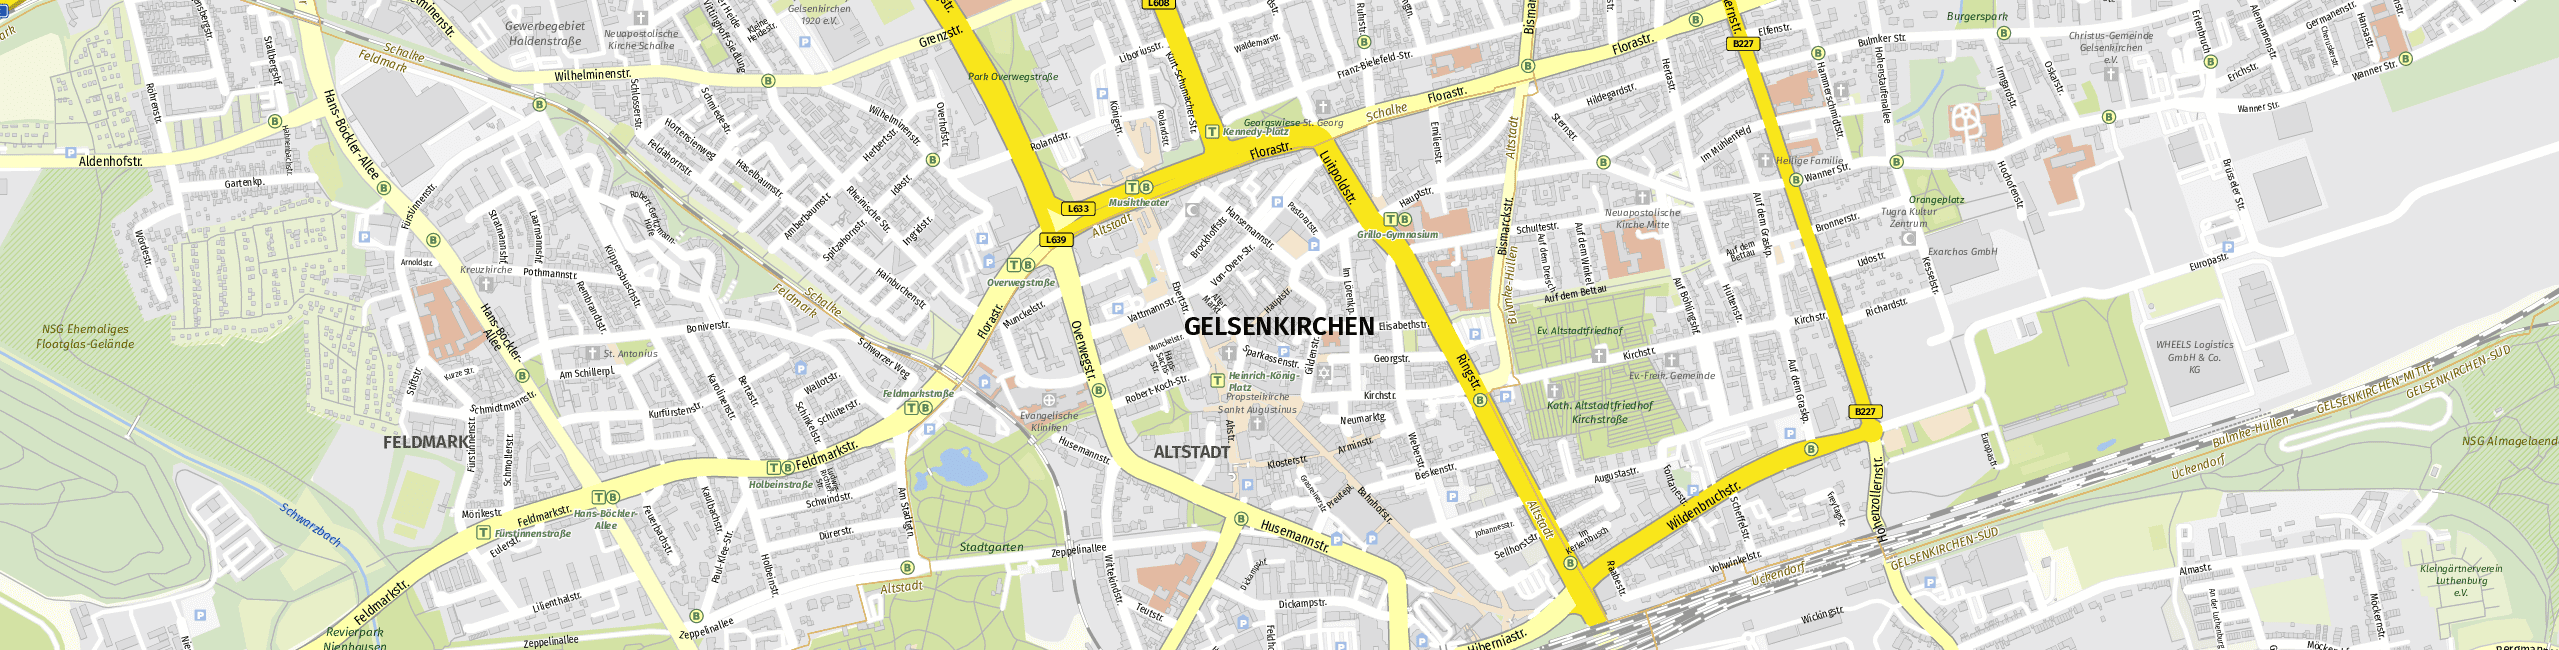 Stadtplan Gelsenkirchen zum Downloaden.